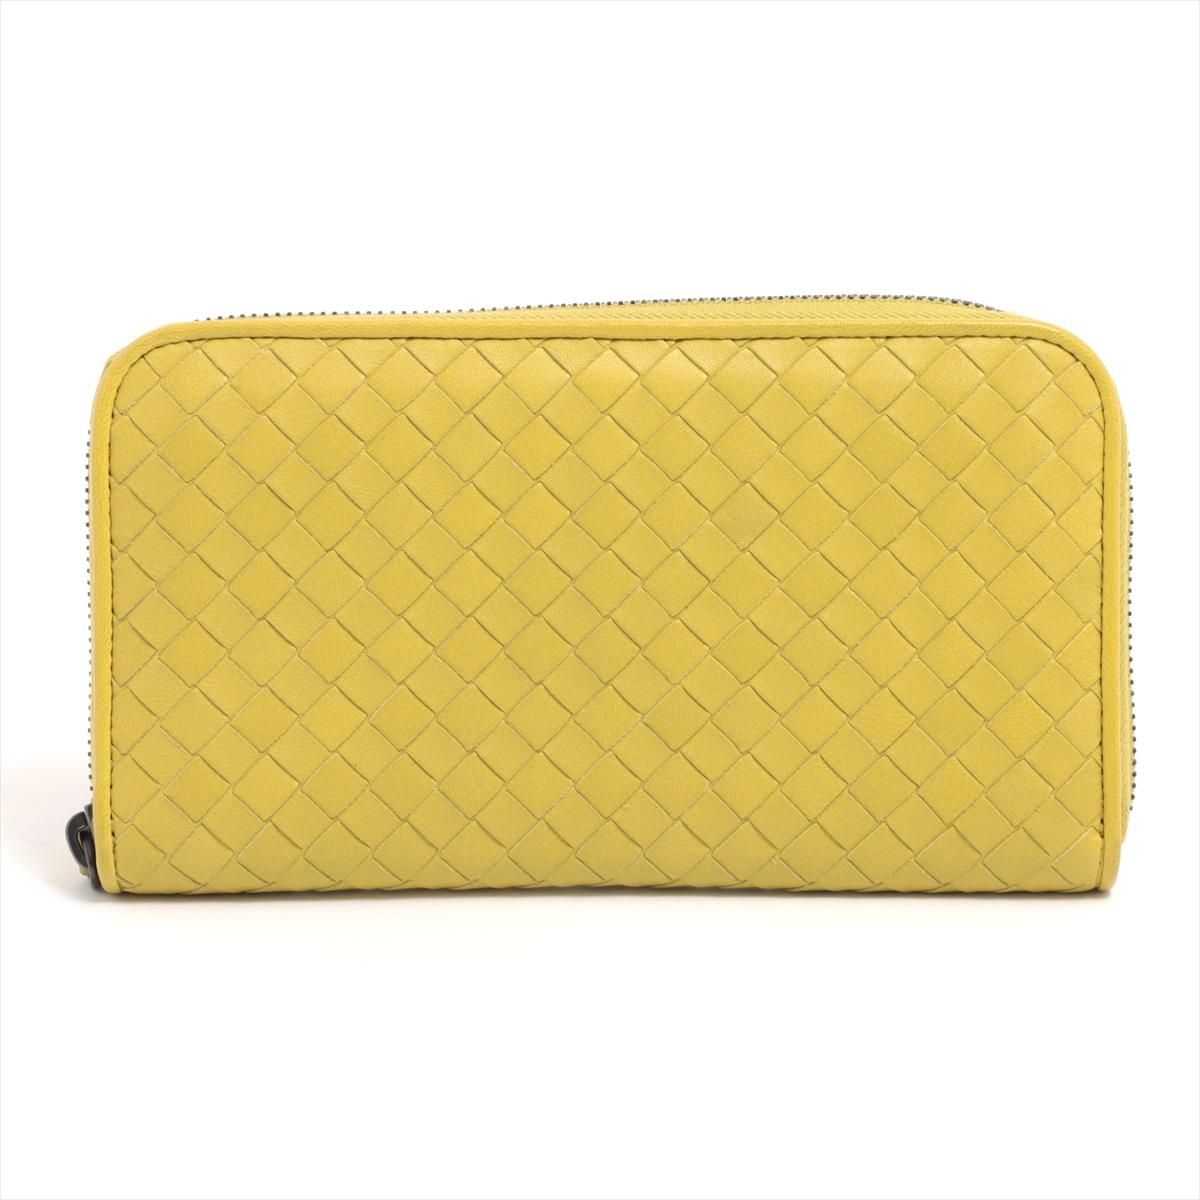 Die Bottega Veneta Intrecciato Leder Zippy Wallet in Gelbgold ist ein luxuriöses und anspruchsvolles Accessoire, das die ikonische Handwerkskunst der Marke unterstreicht. Das Portemonnaie ist aus hochwertigem Leder mit der für Bottega Veneta